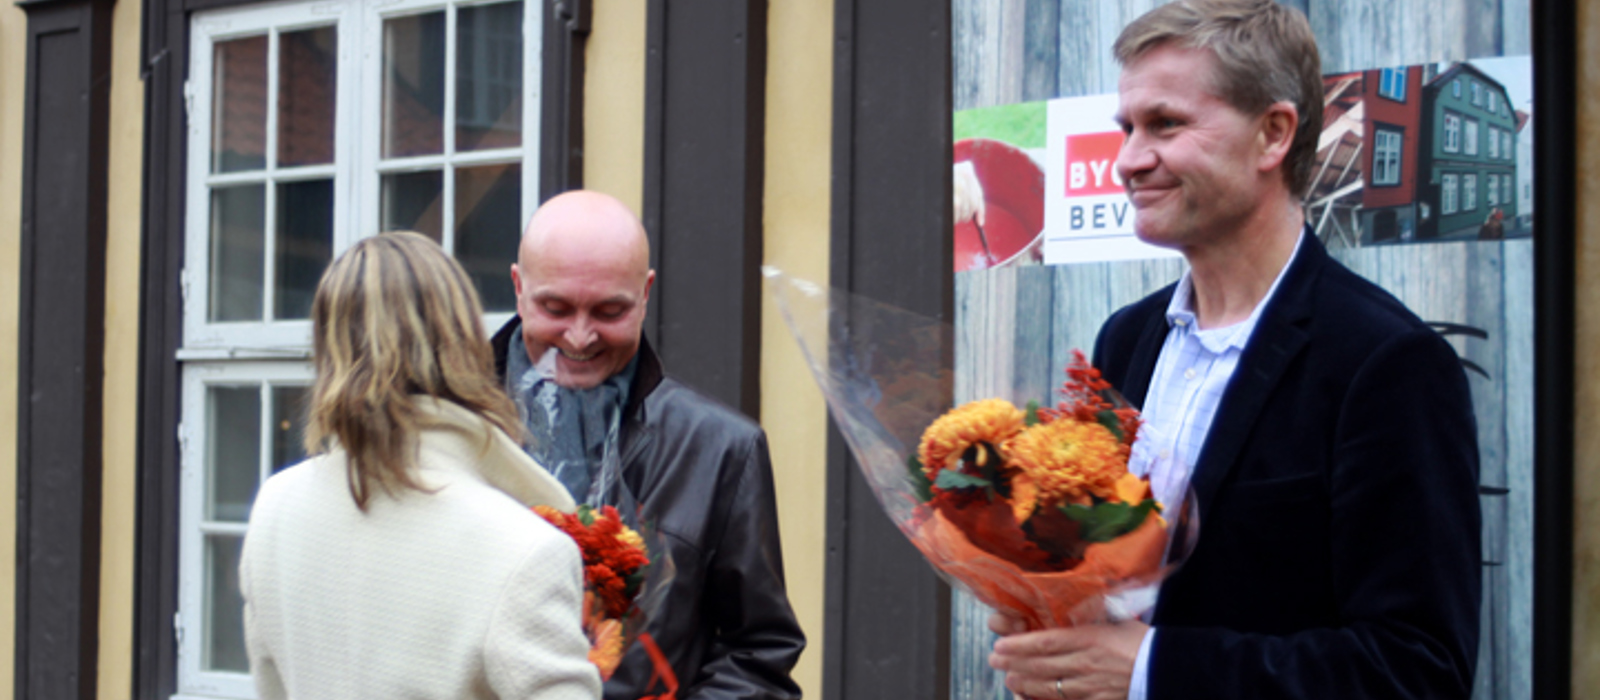 BNL direktør Ketil Lyng og Miljøvernminister Erik Solheim får blomster av Sigrid Murud, daglig leder i Bygg og Bevar etter å ha åpnet portalen 19. oktober 2010. Foto: CEWG